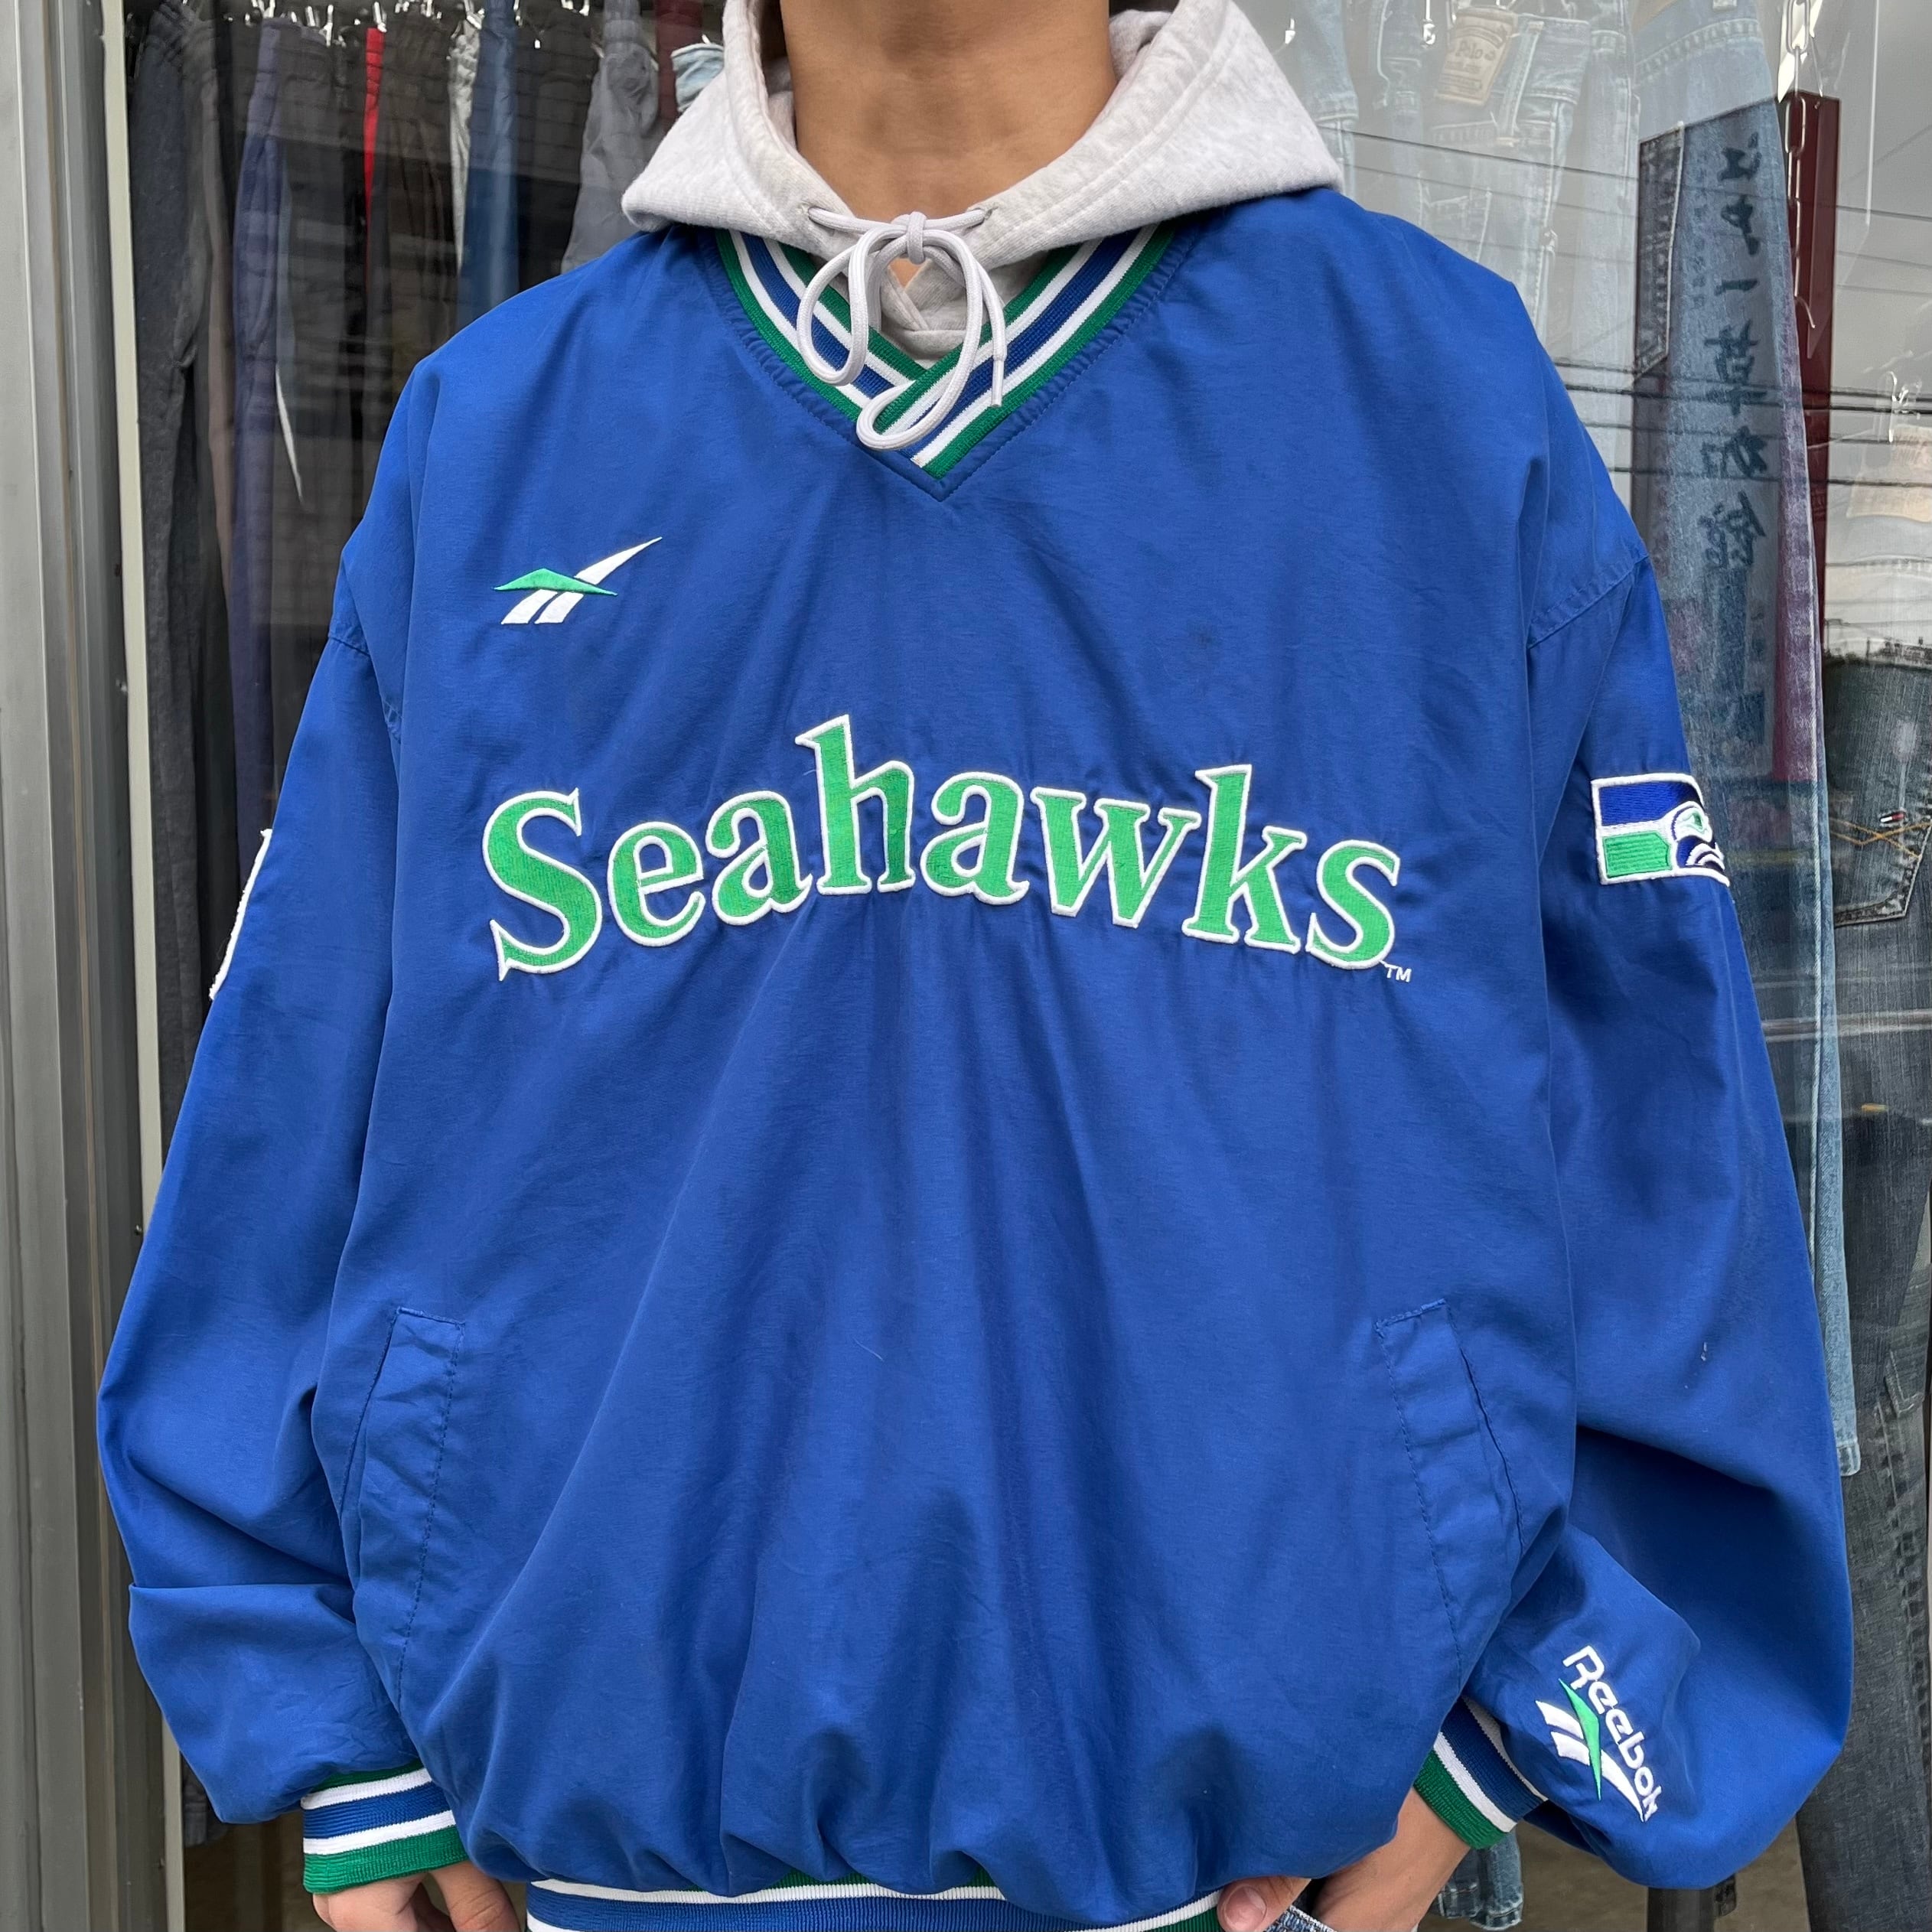 90s スターター シアトルシーホークス NFL 刺繍 ナイロンジャケット